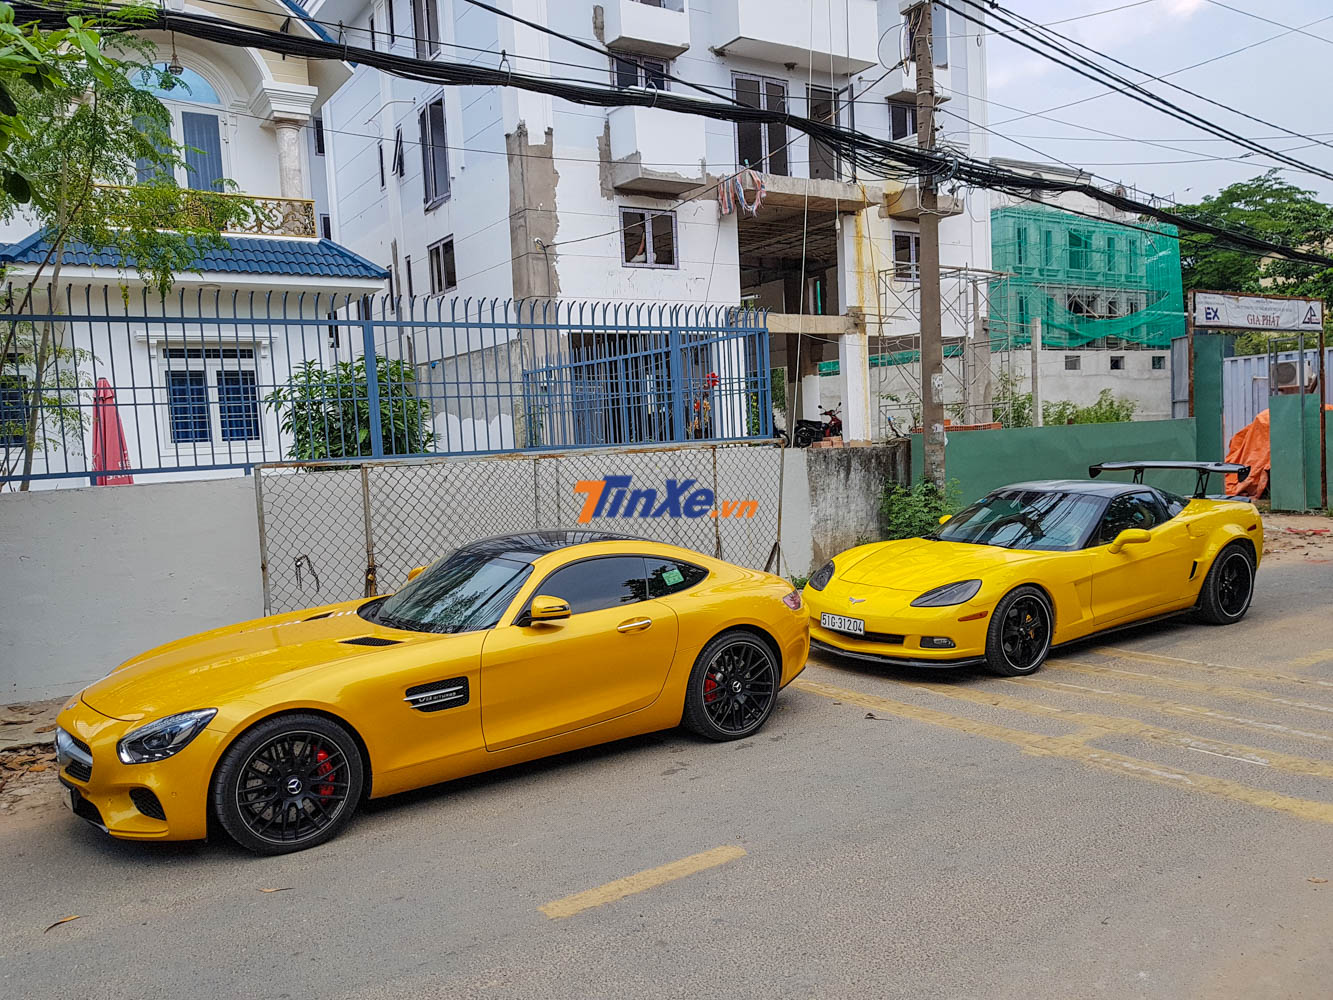 Bộ đôi Mercedes-AMG GT S cùng Chevrolet Corvette C6 đều mang tông màu vàng